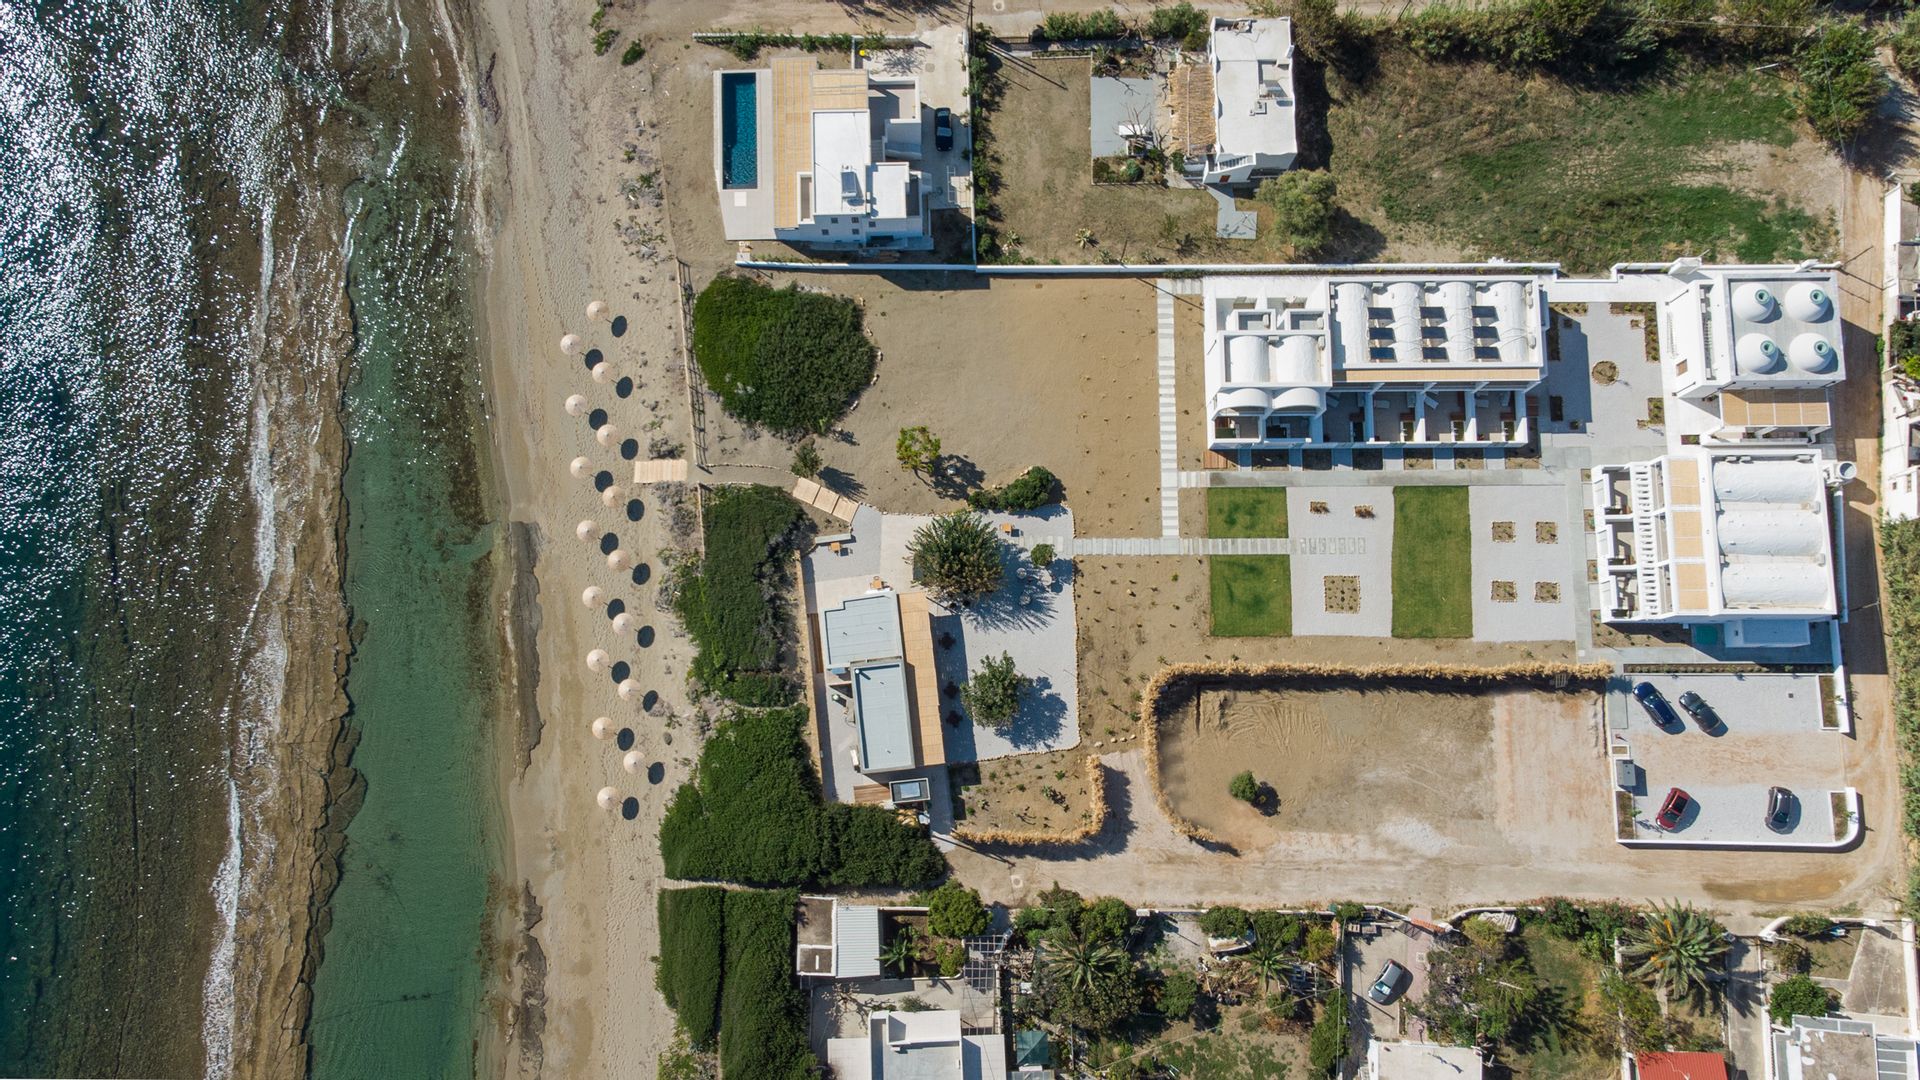 4* ALERO Seaside Skyros Resort - Σκύρος ✦ 2 Ημέρες (1 Διανυκτέρευση) ✦ 2 άτομα ✦ 2 ✦ 26/05/2023 έως 30/09/2023 ✦ Μπροστά στην παραλία!